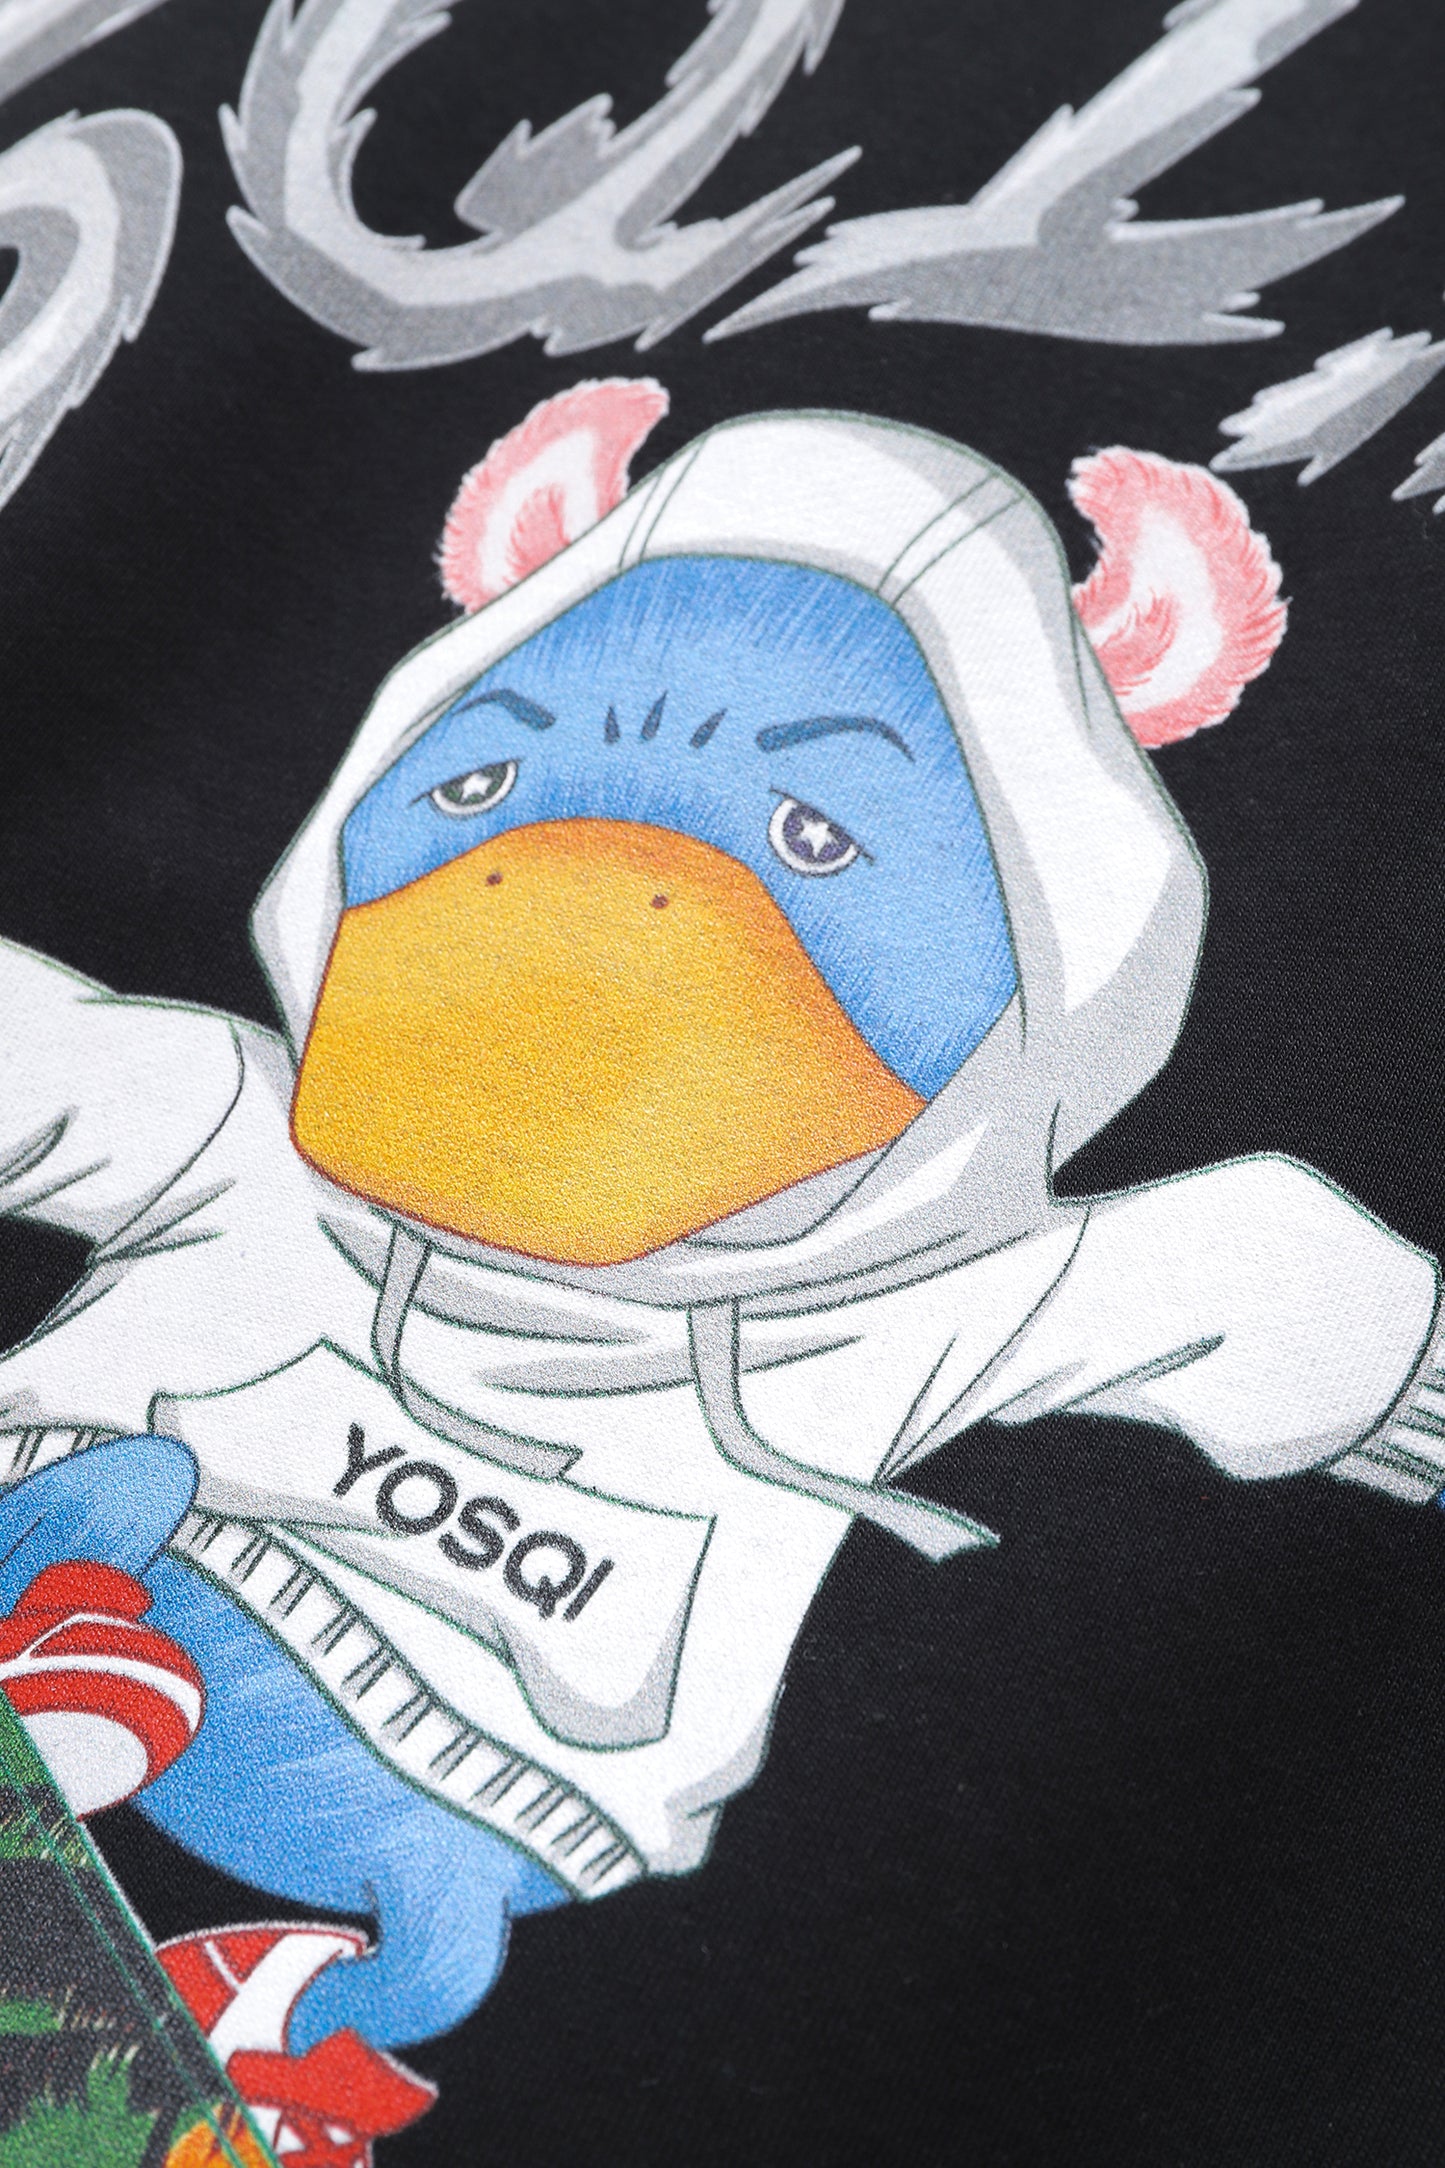 Yosqi Mascot Oversized Hoodie- White Skateboarder